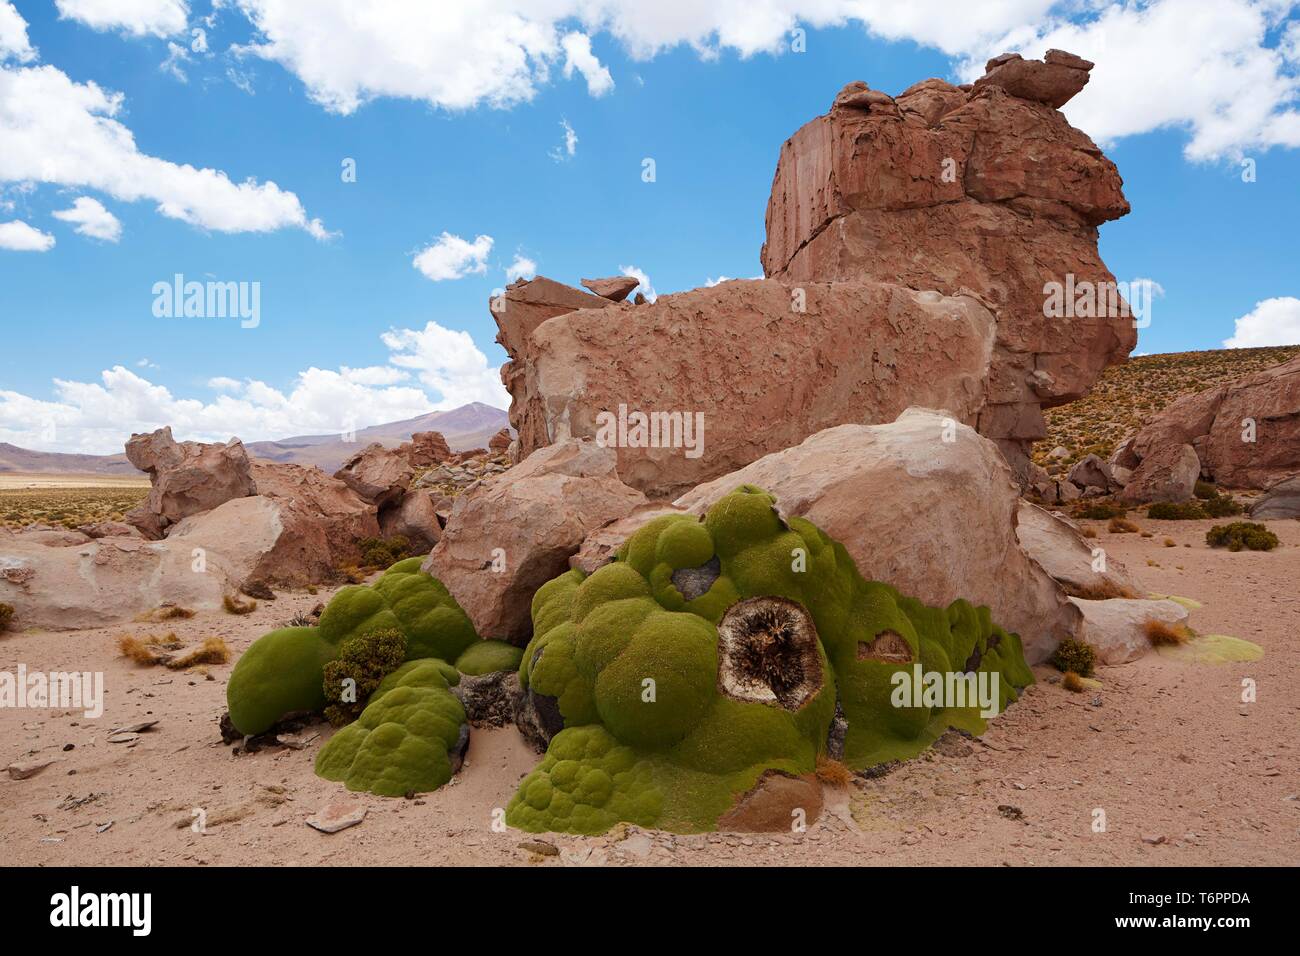 Yareta or llareta (Azorella compacta) on the Altiplano, Potosi District, Bolivia, South America Stock Photo